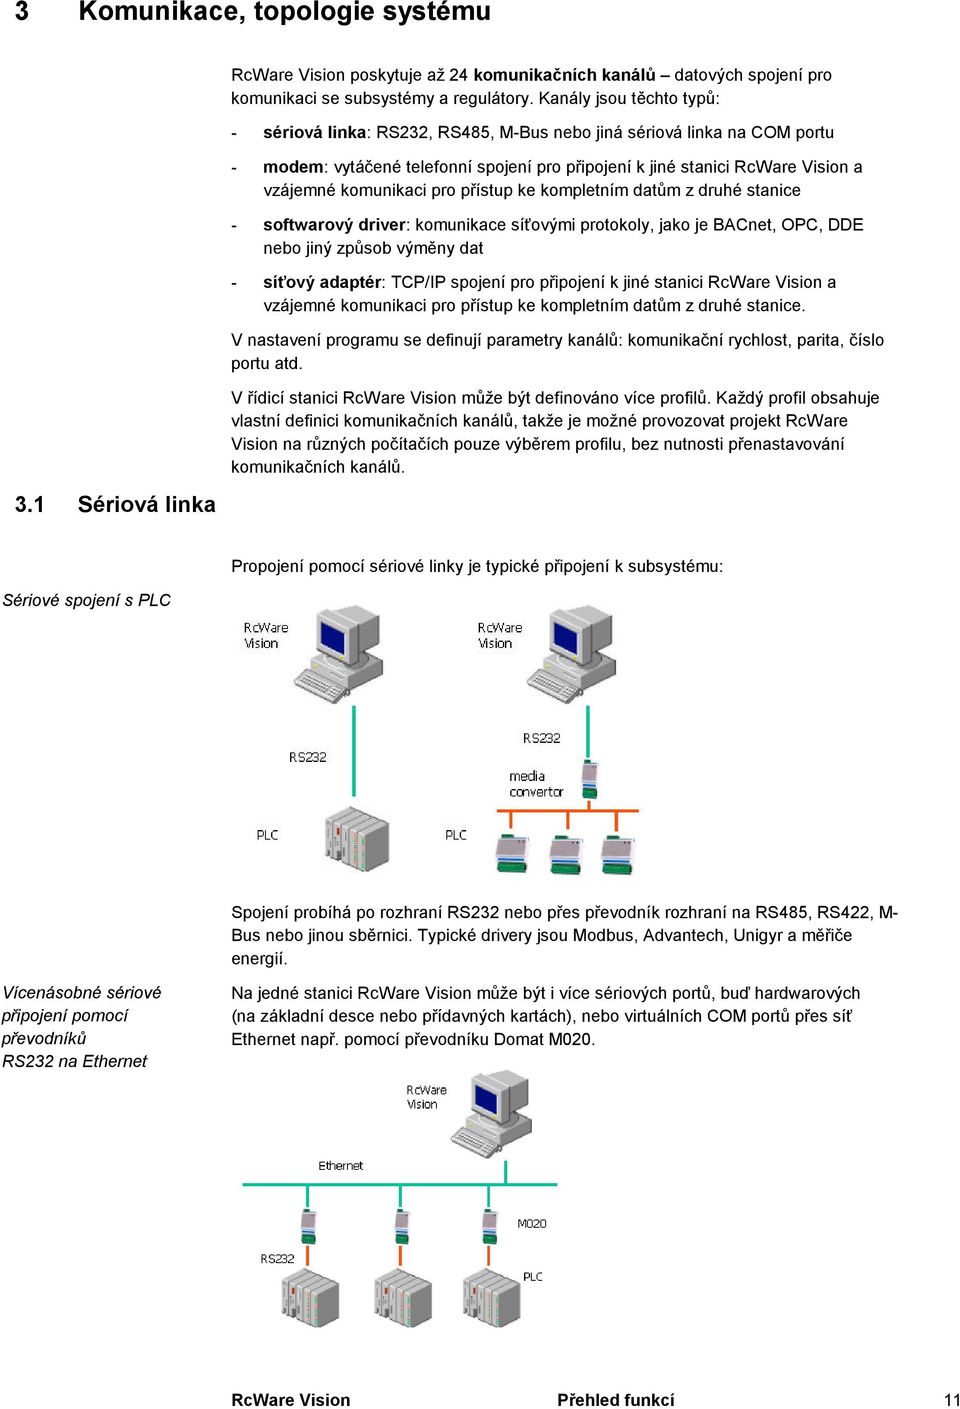 pro přístup ke kompletním datům z druhé stanice - softwarový driver: komunikace síťovými protokoly, jako je BACnet, OPC, DDE nebo jiný způsob výměny dat - síťový adaptér: TCP/IP spojení pro připojení